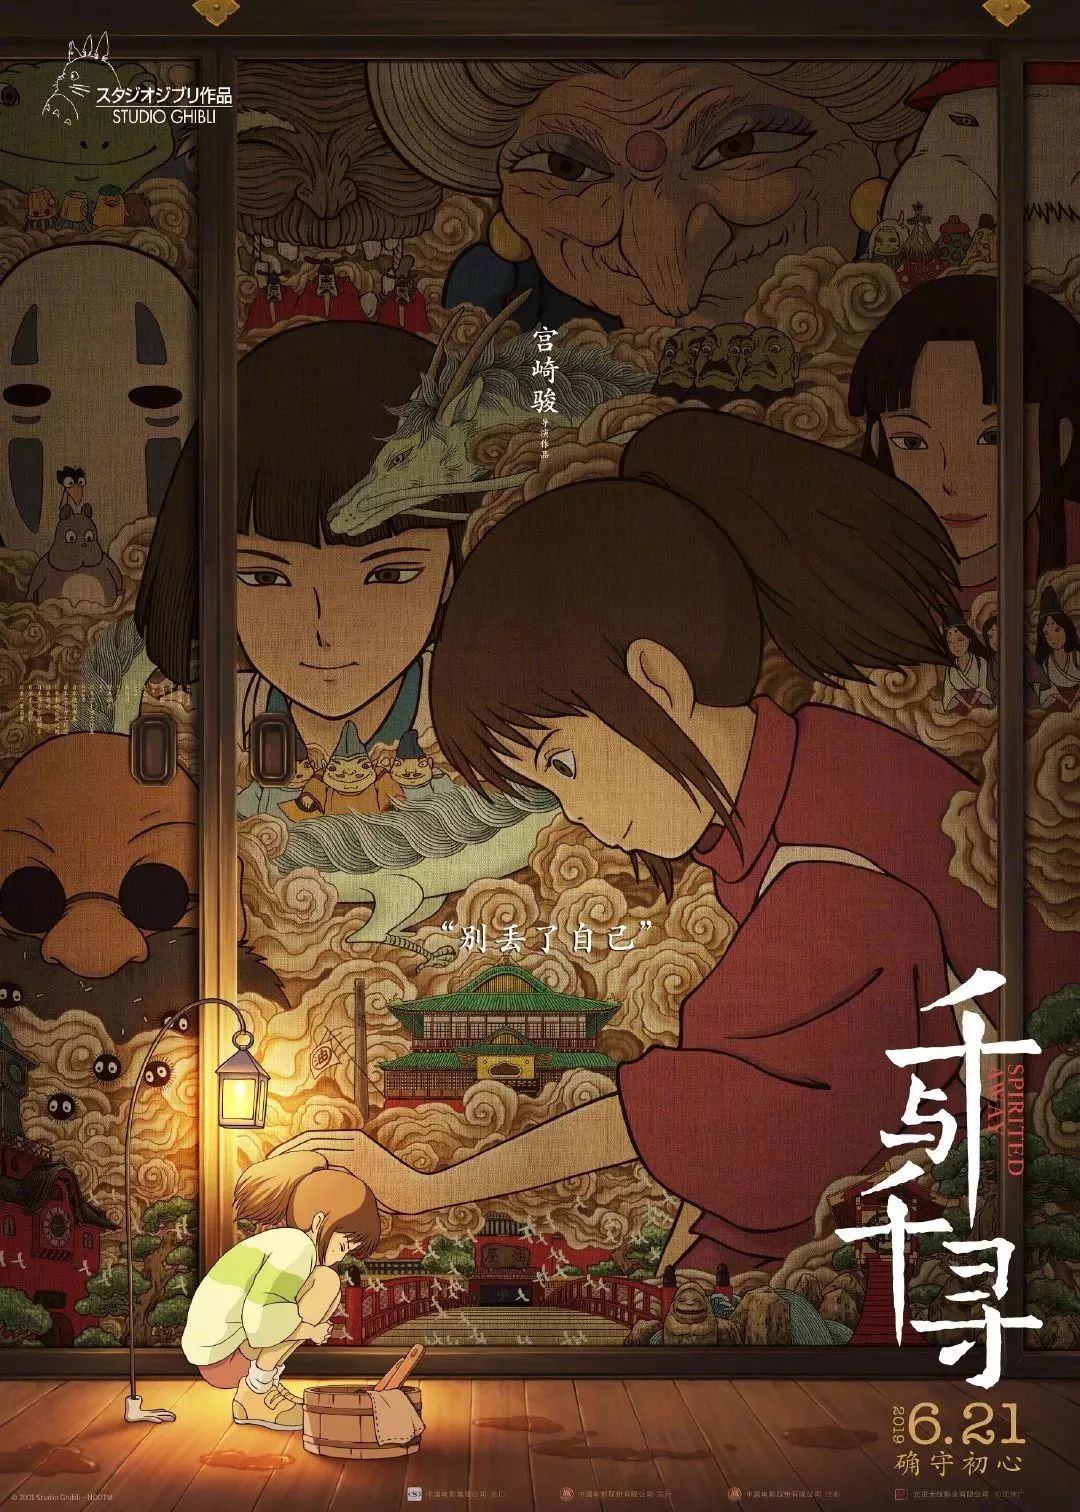 对于这次《千与千寻》在国内上映,宫崎骏本人还专门给中国的影迷准备